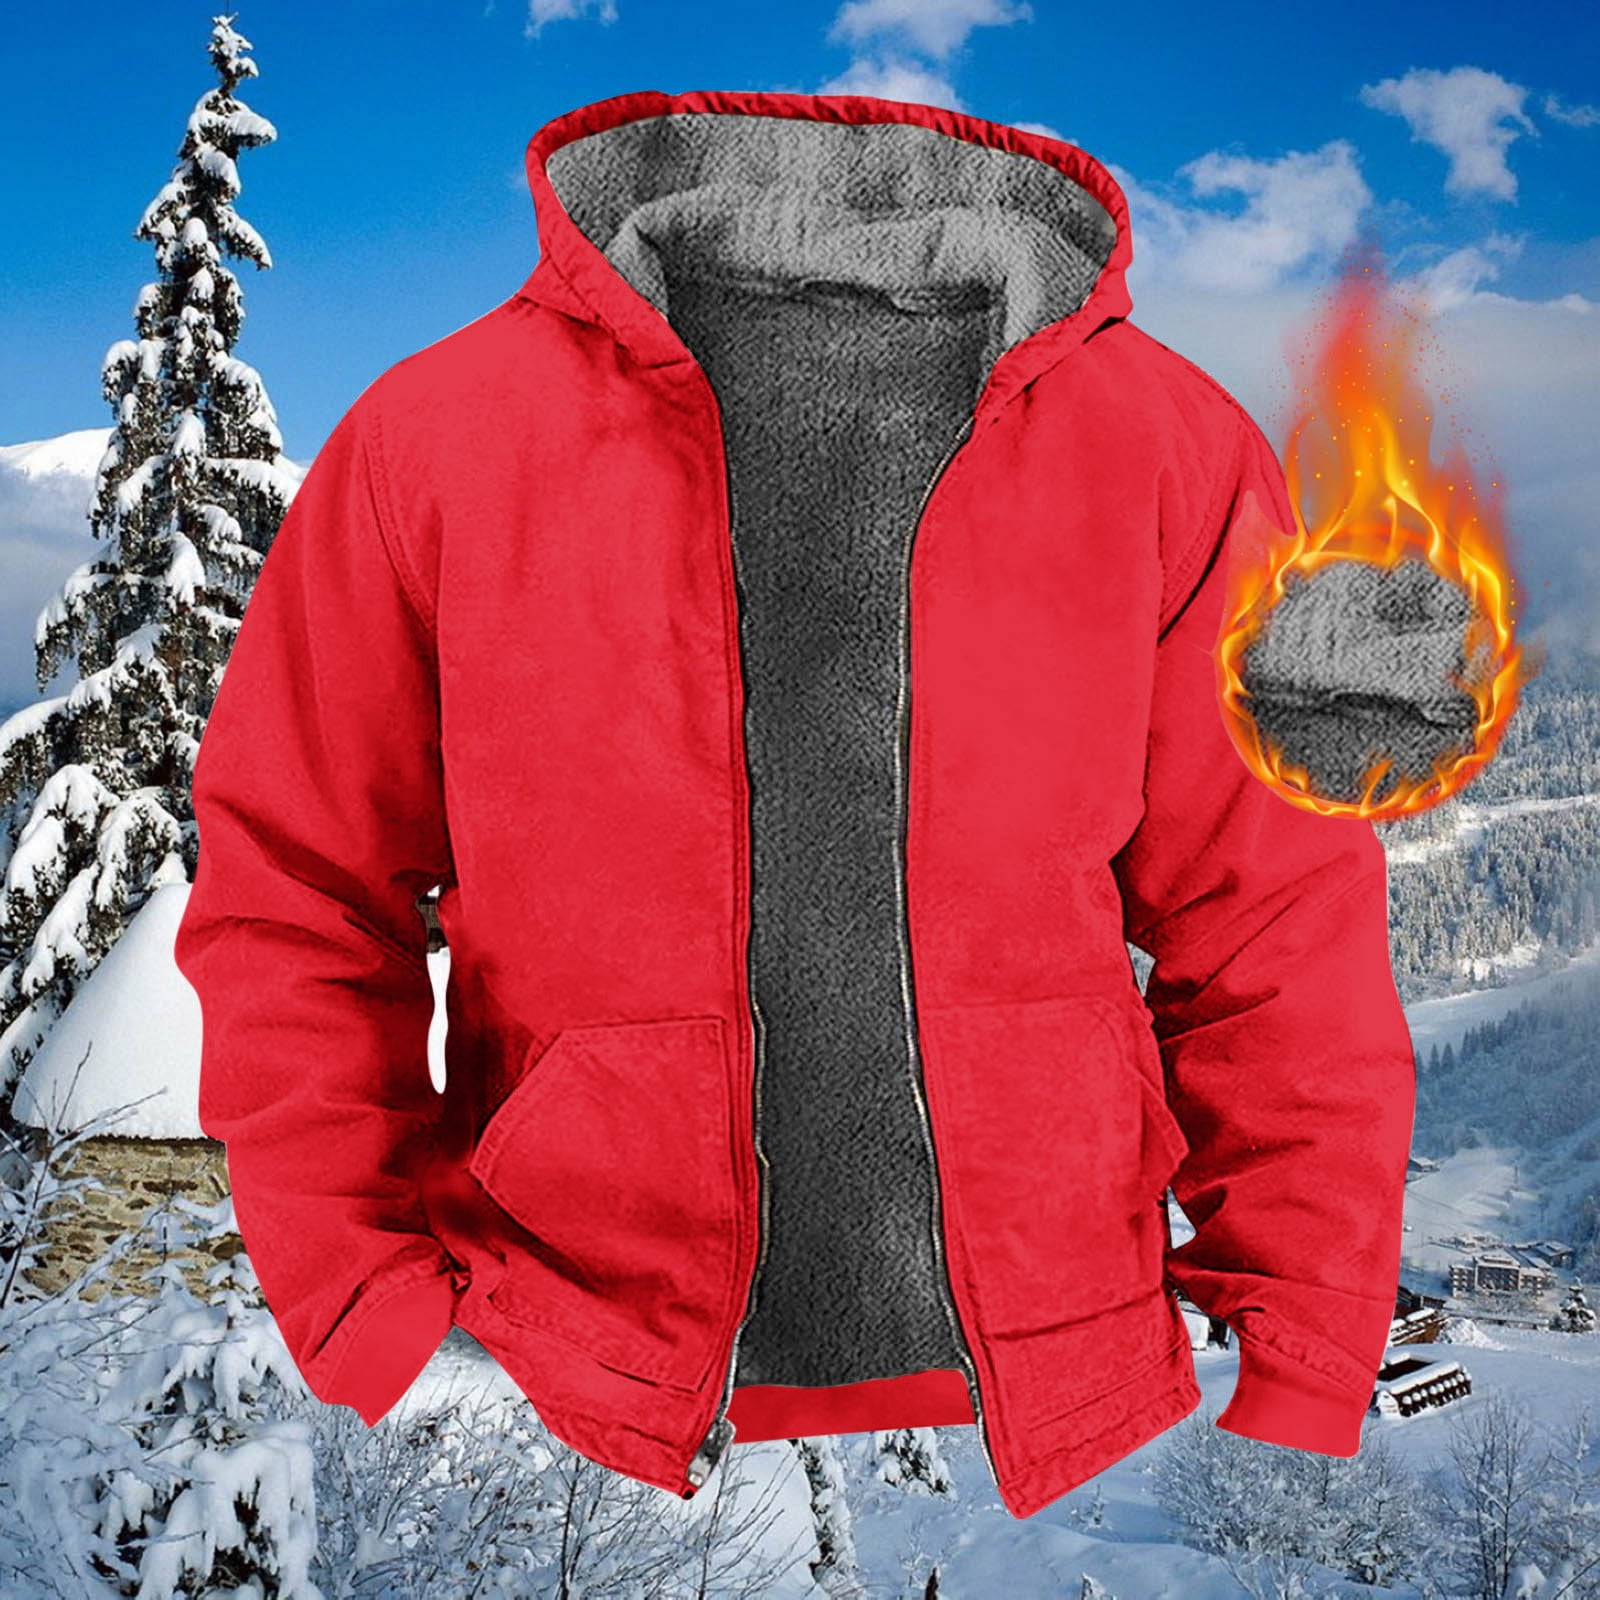 Winter Jackets for Men,Full Fleece Lined Winter Coats for Men